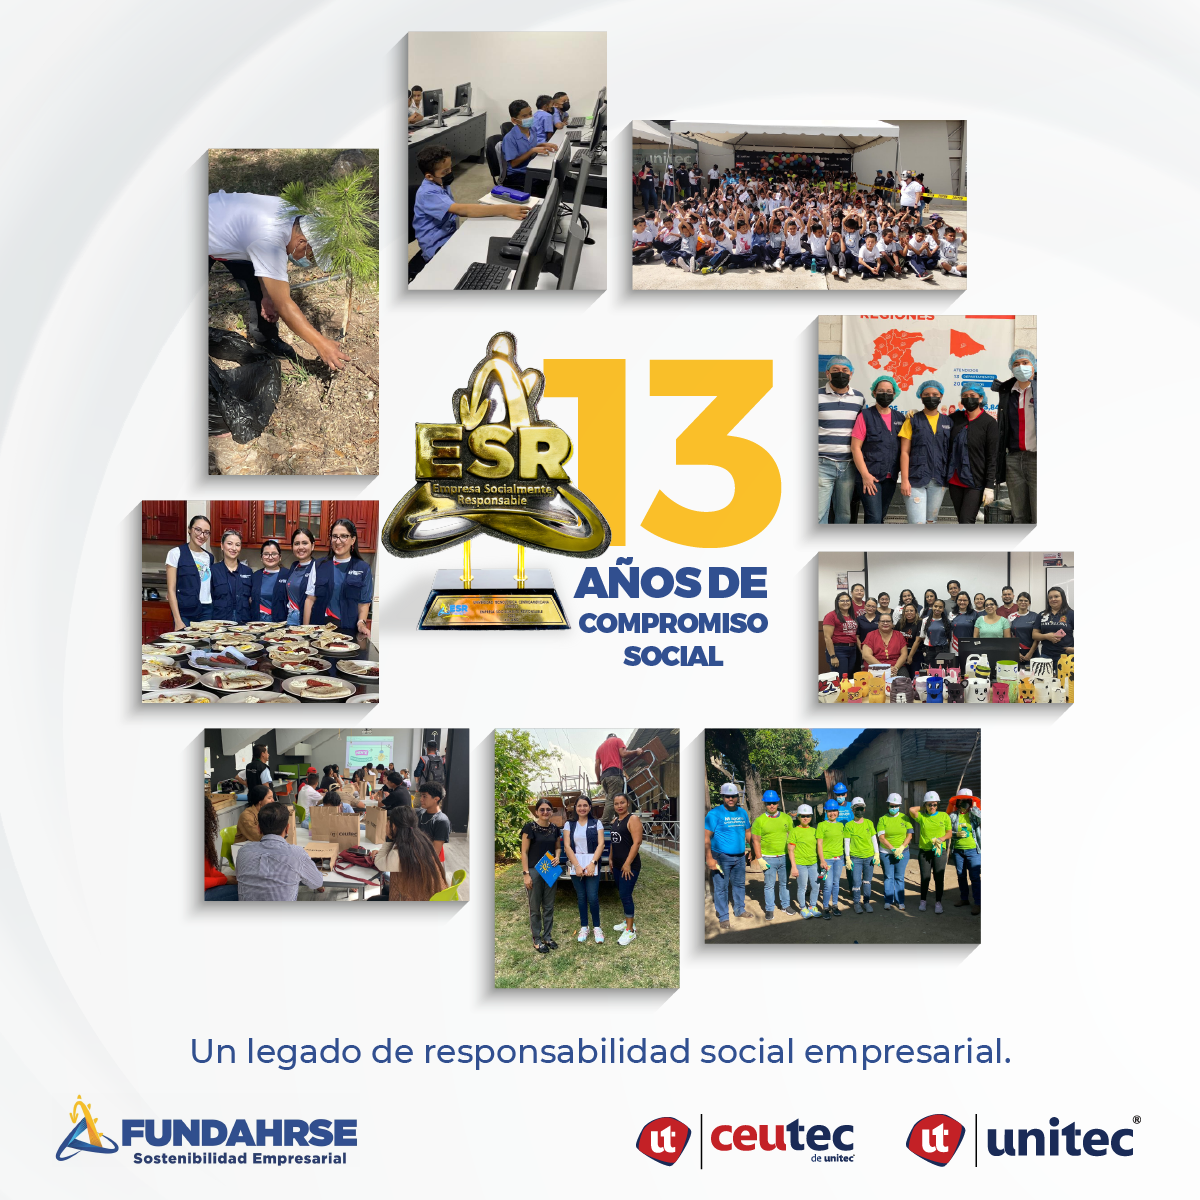 Unitec|Ceutec reciben el sello FUNDAHRSE por su compromiso con la responsabilidad social en Honduras